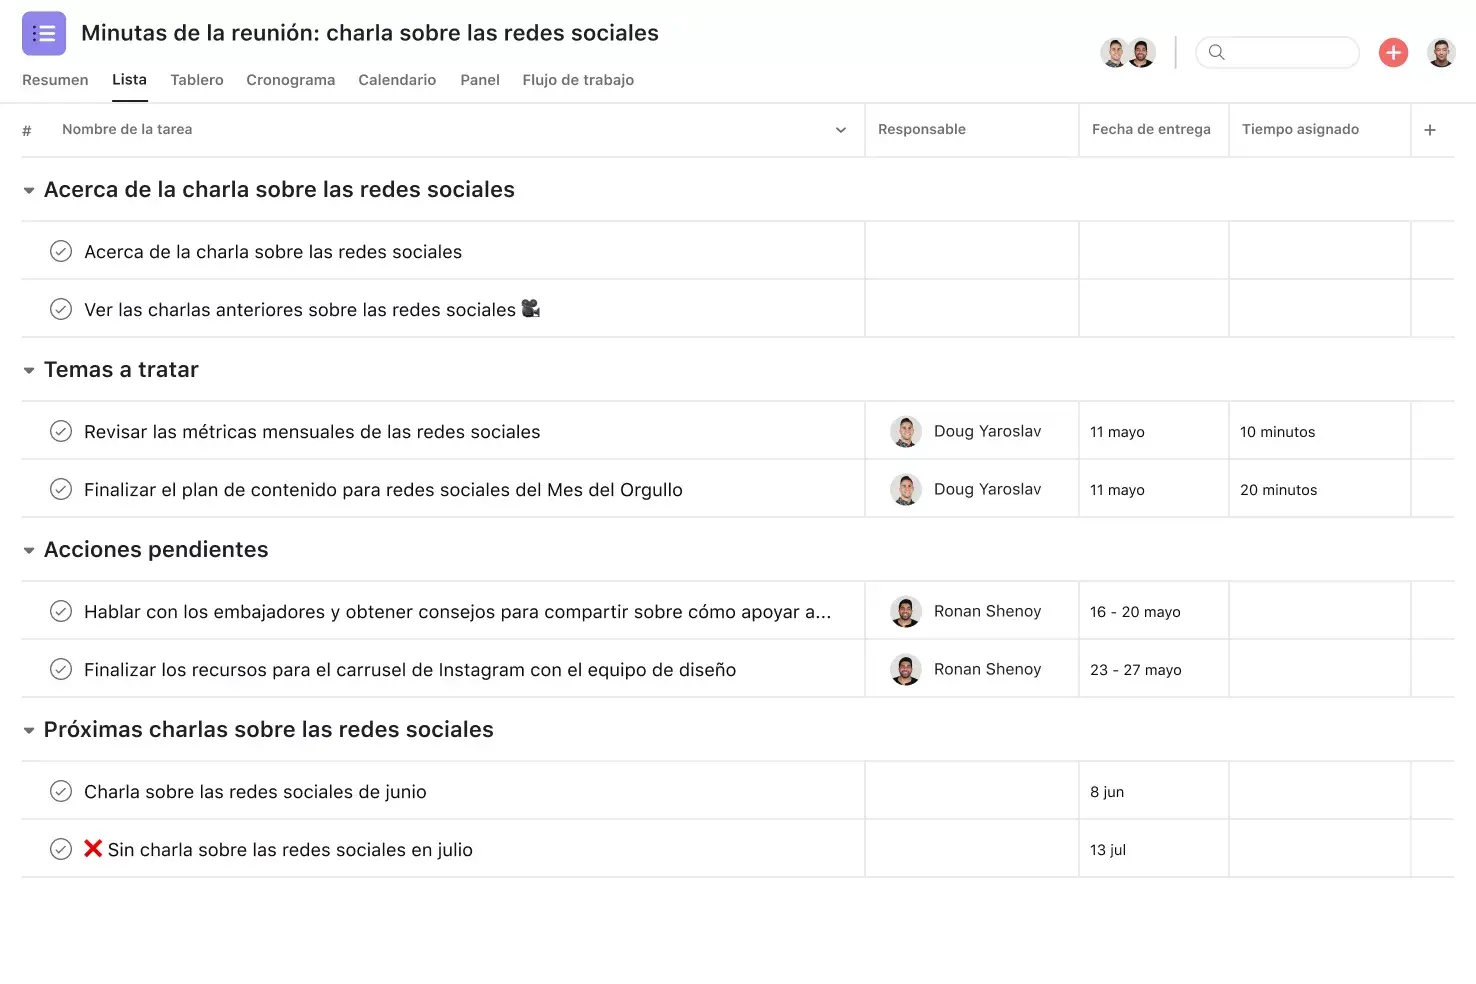 [Interfaz de usuario del producto] Proyecto de minutas de la reunión en Asana, vista del proyecto en formato de hoja de cálculo (Lista)